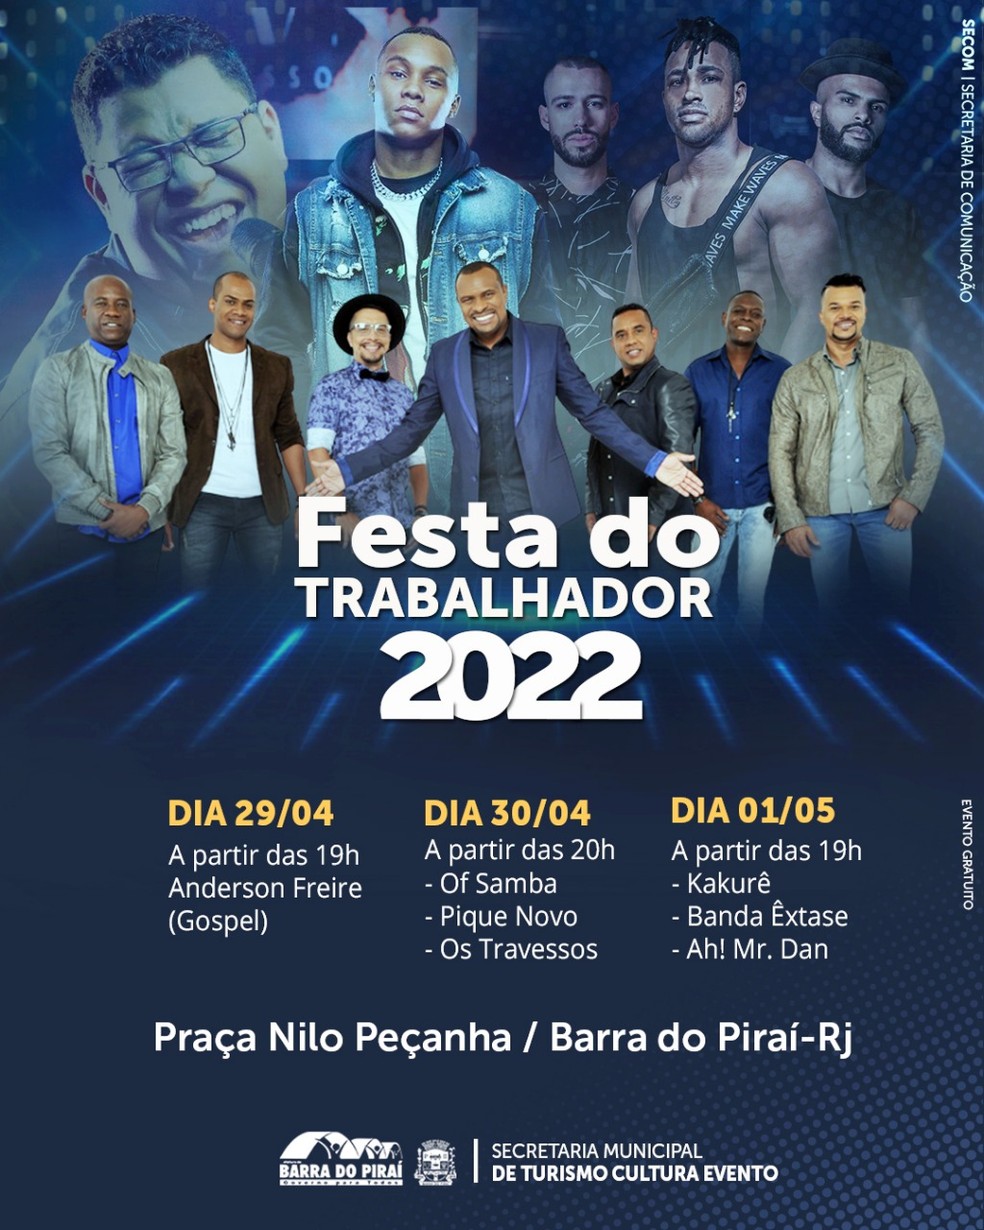 FESTA DO TRABALHADOR SEROPÉDICA 2022